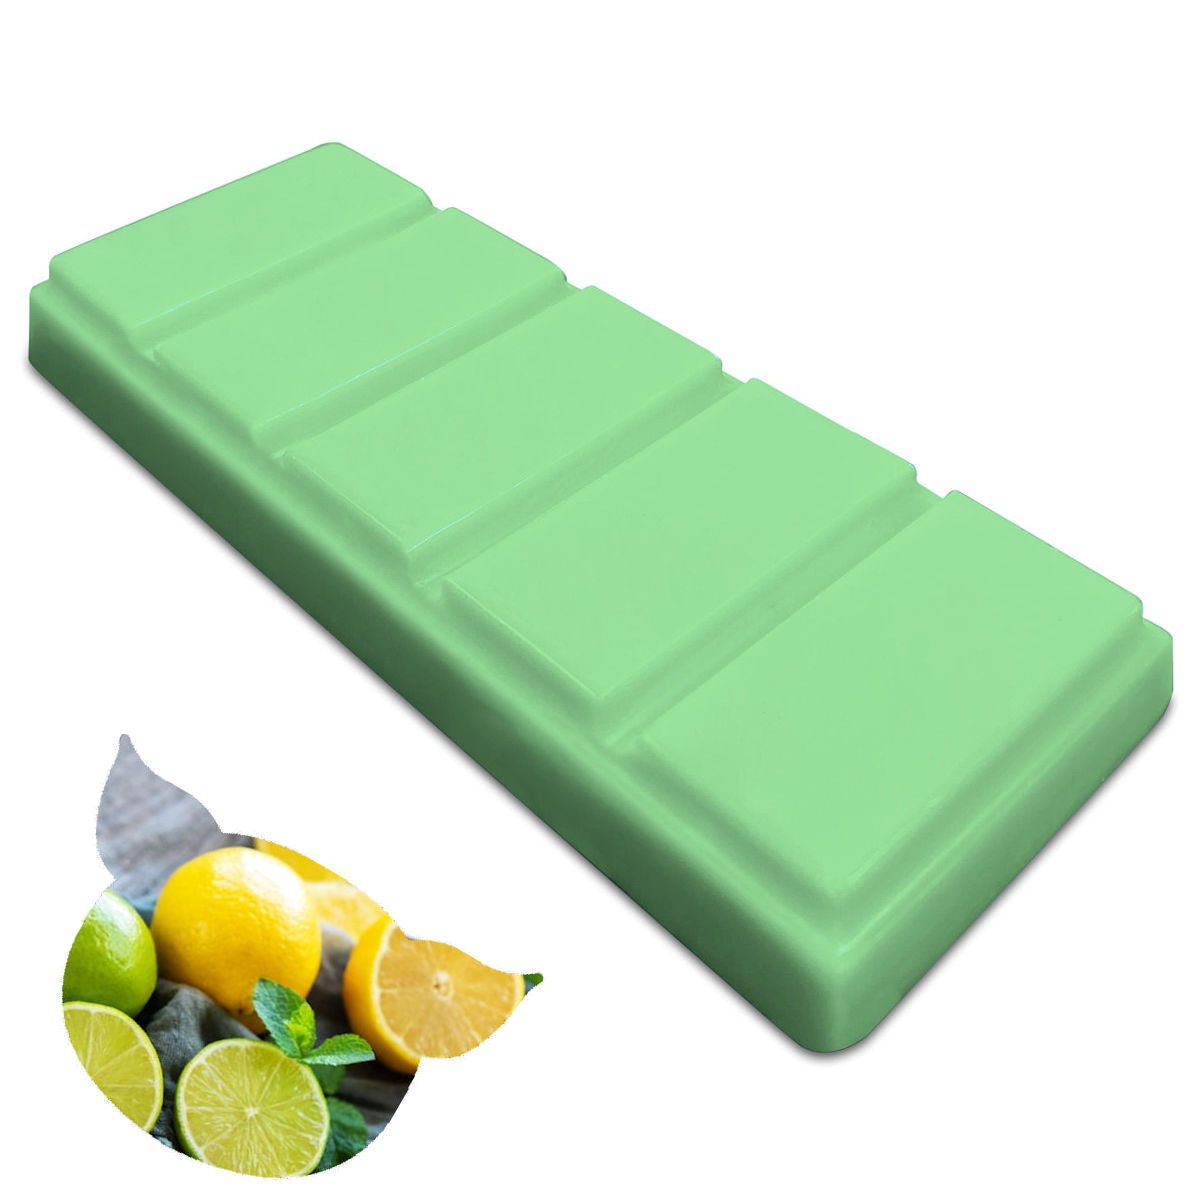 Lemon & Lime Medium Wax Melt Bar